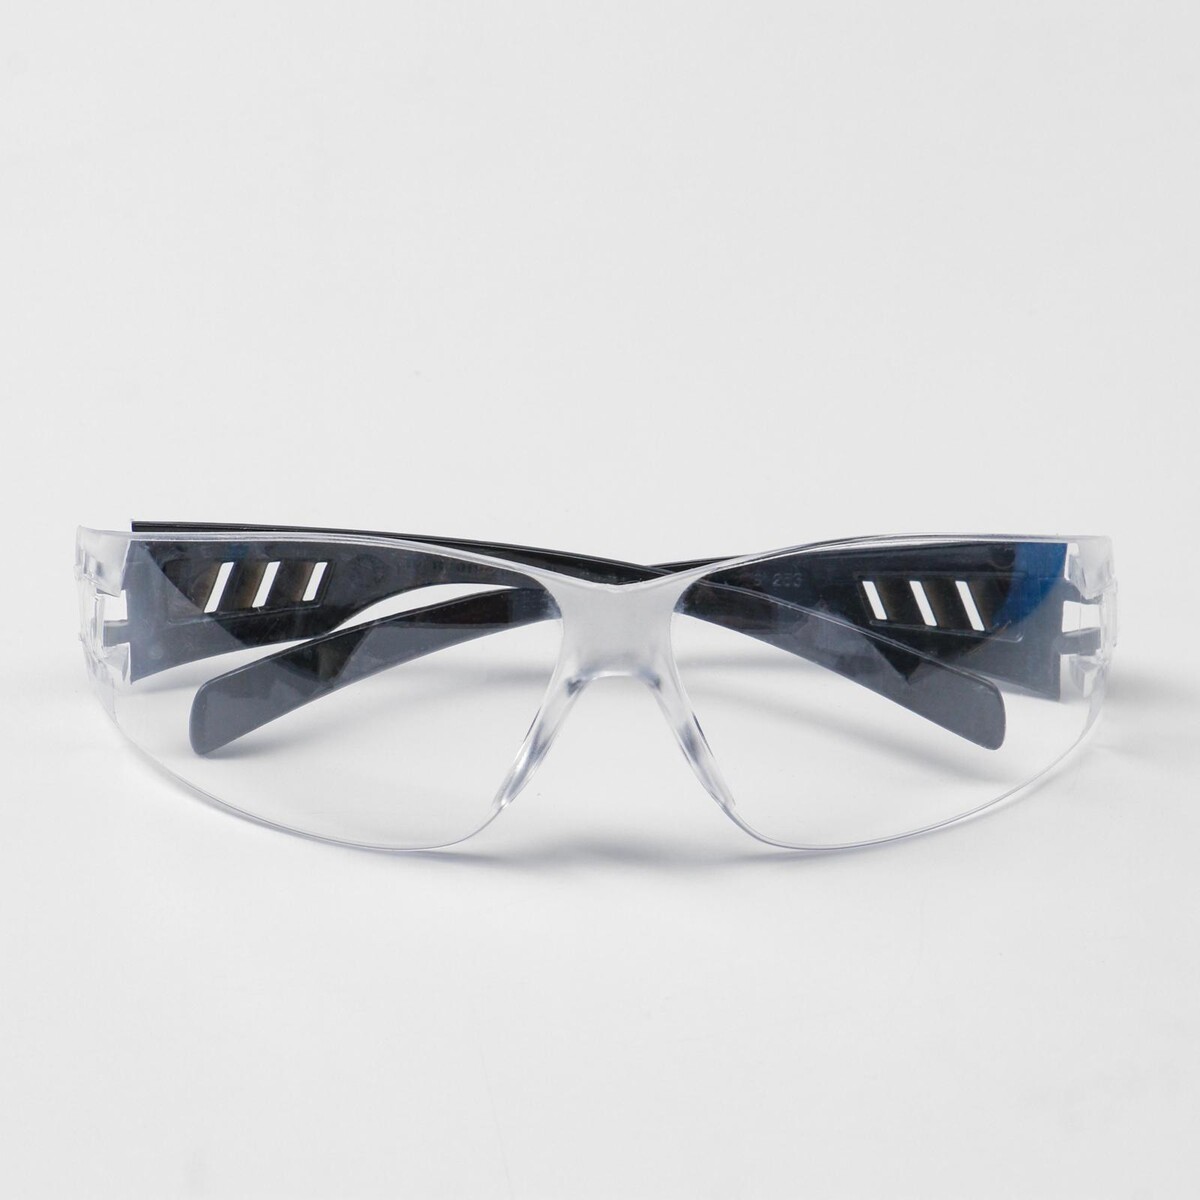 Очки защитные очки защитные открытые о35 визион super 5 pc поликарбонат